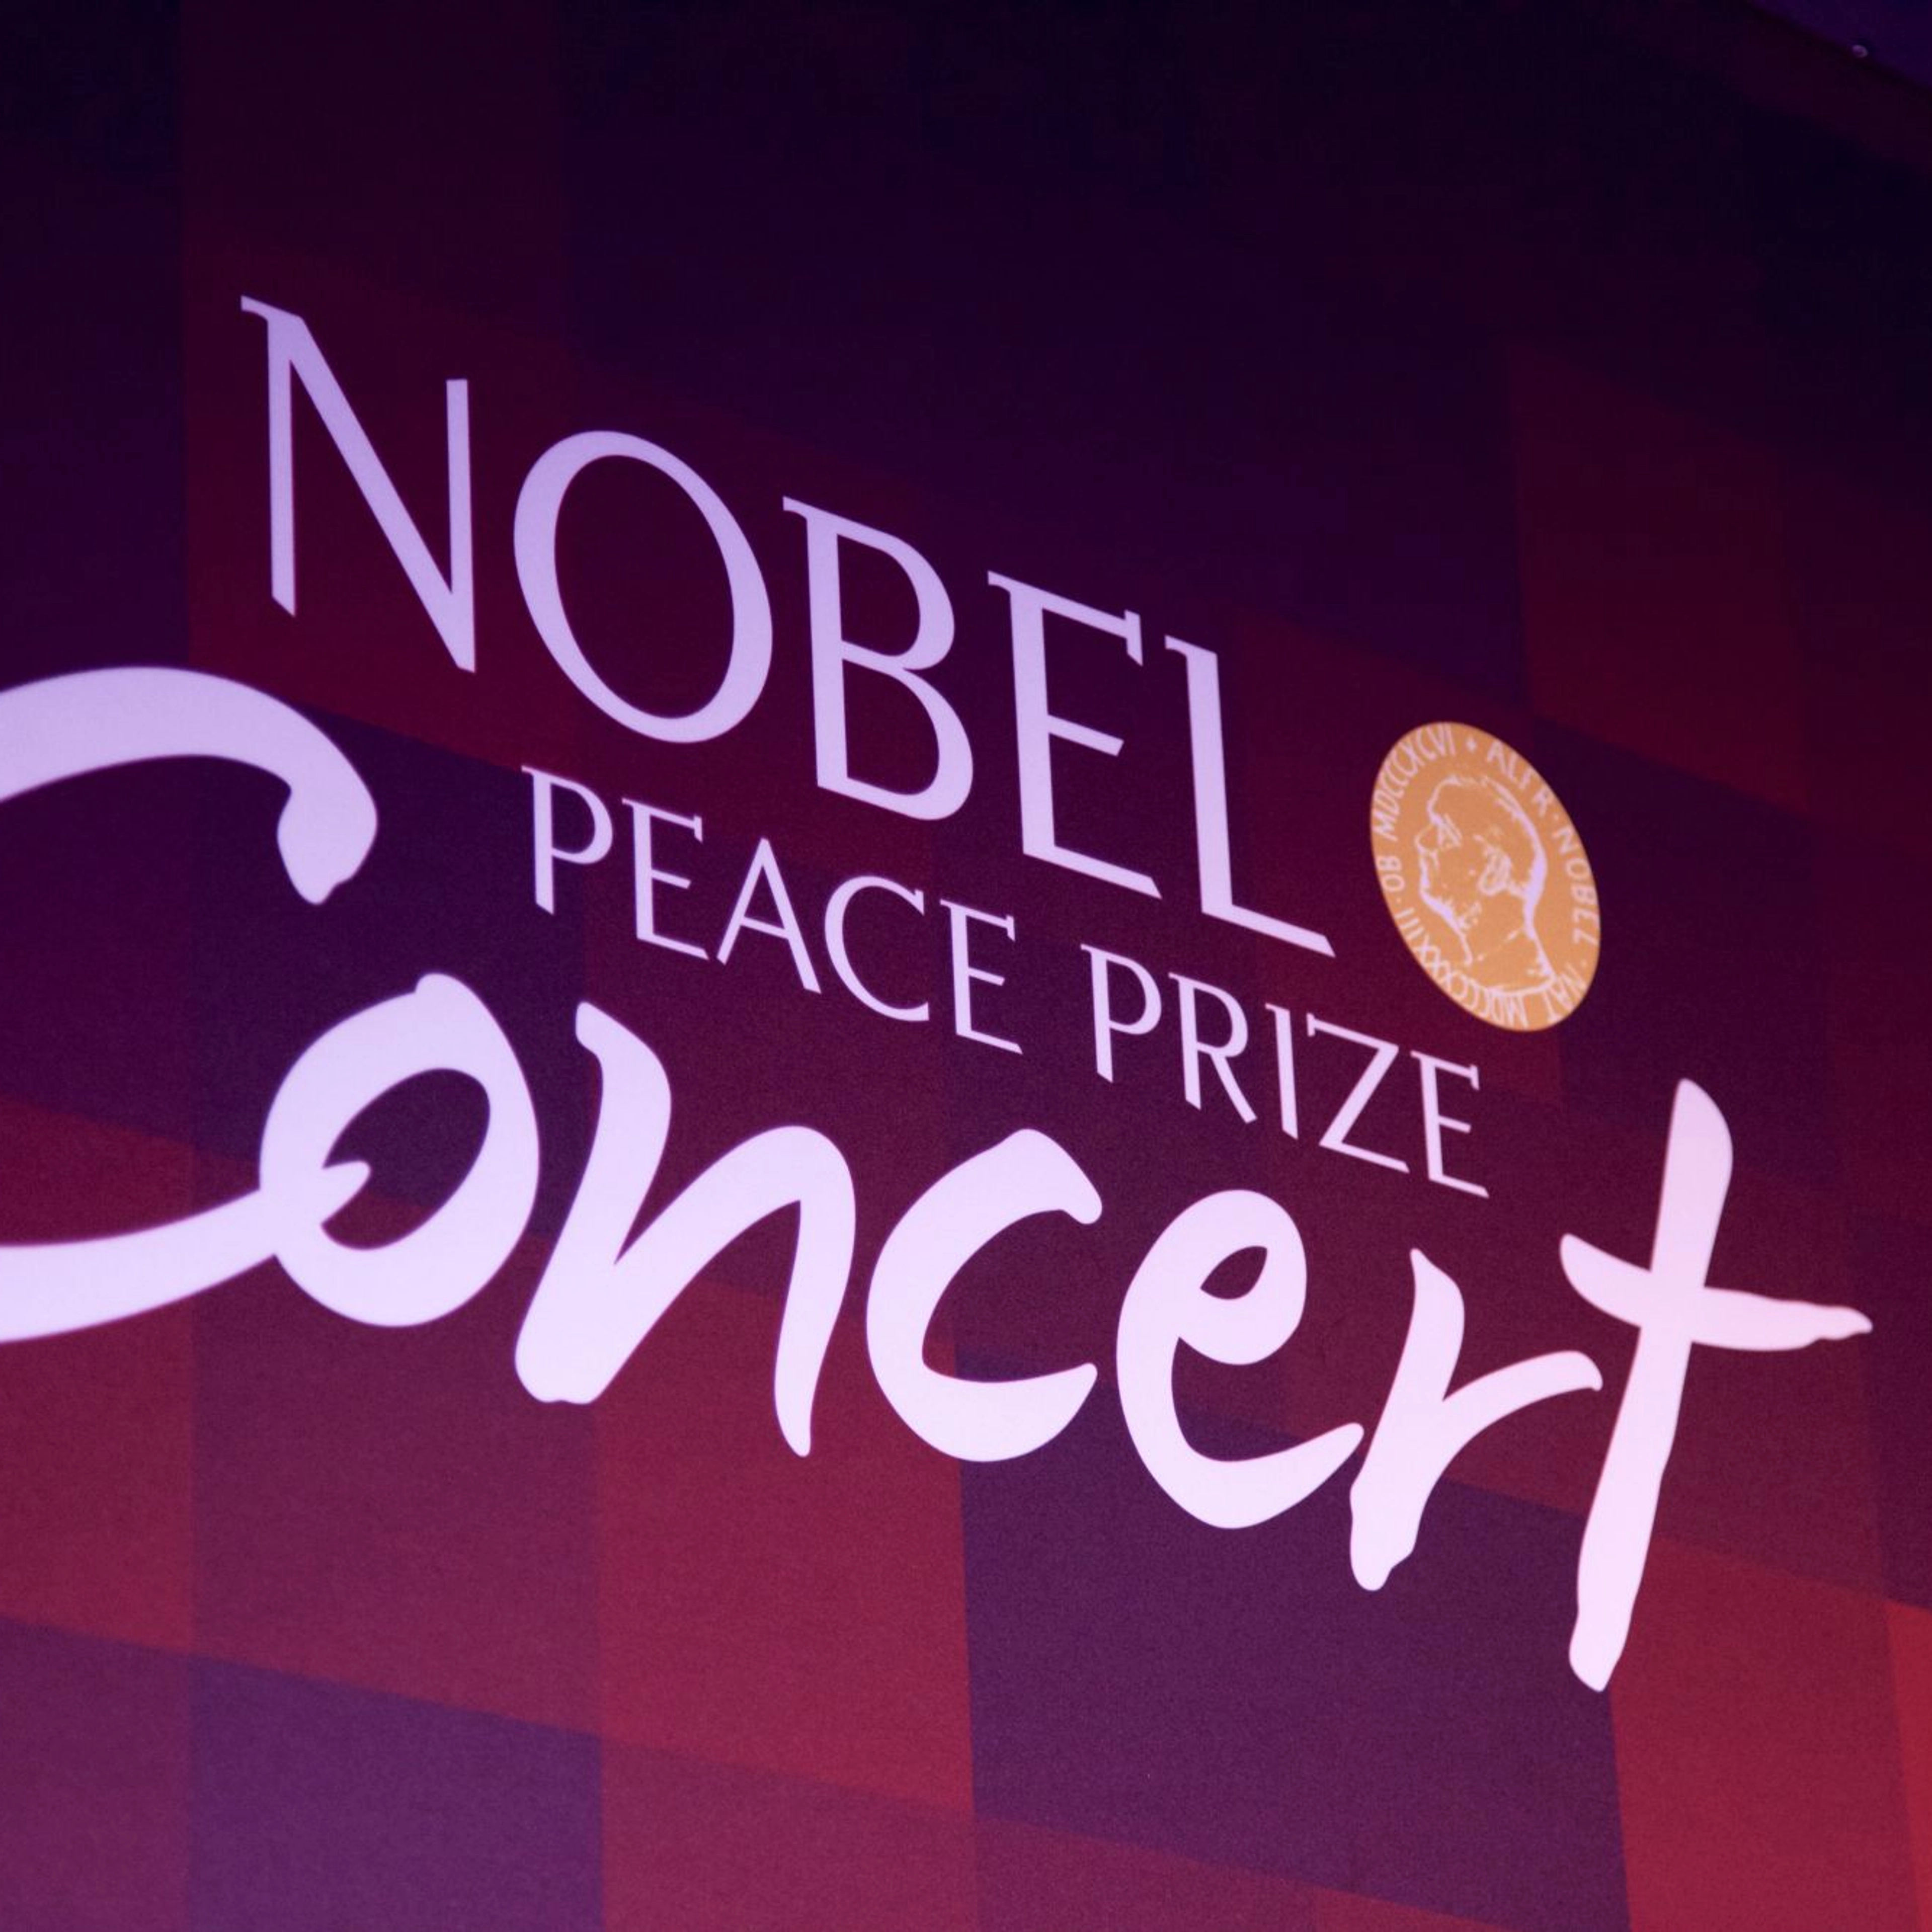 Nobel Peace Price - Oslo, Norway